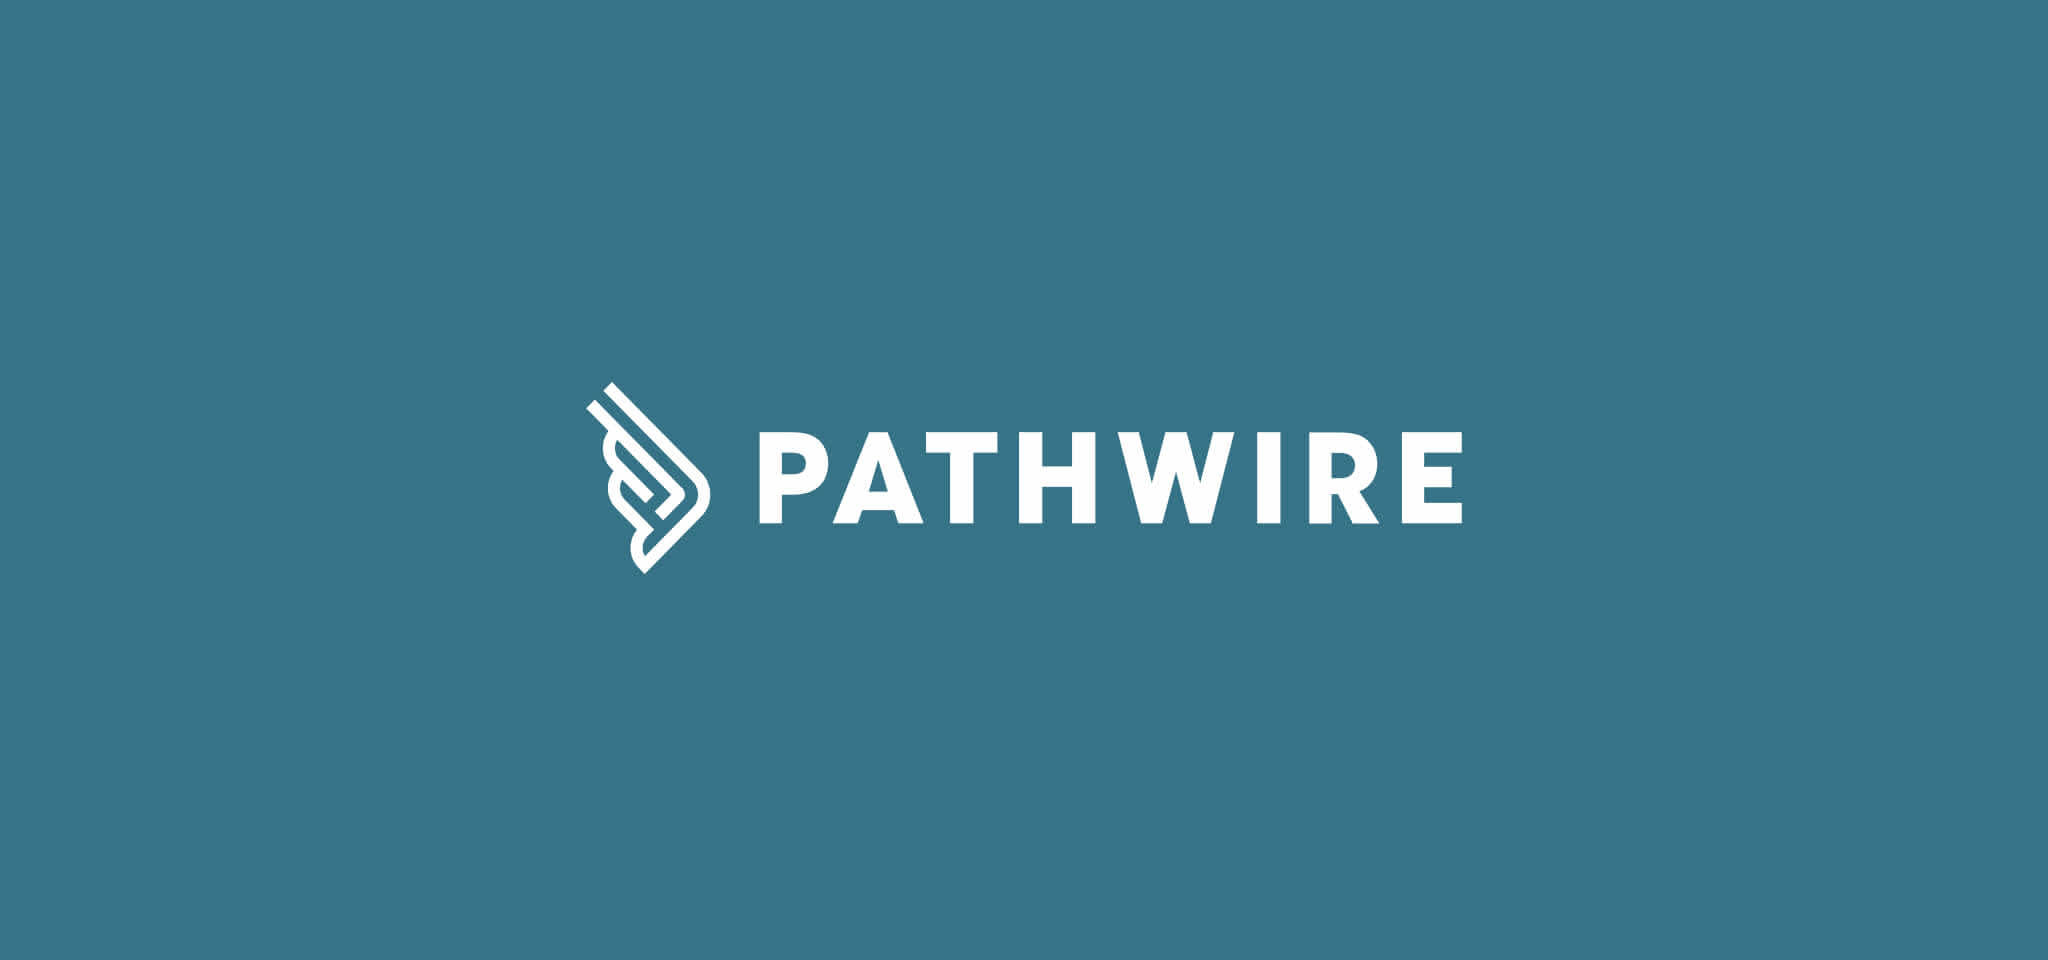 Título y logo de Pathwire